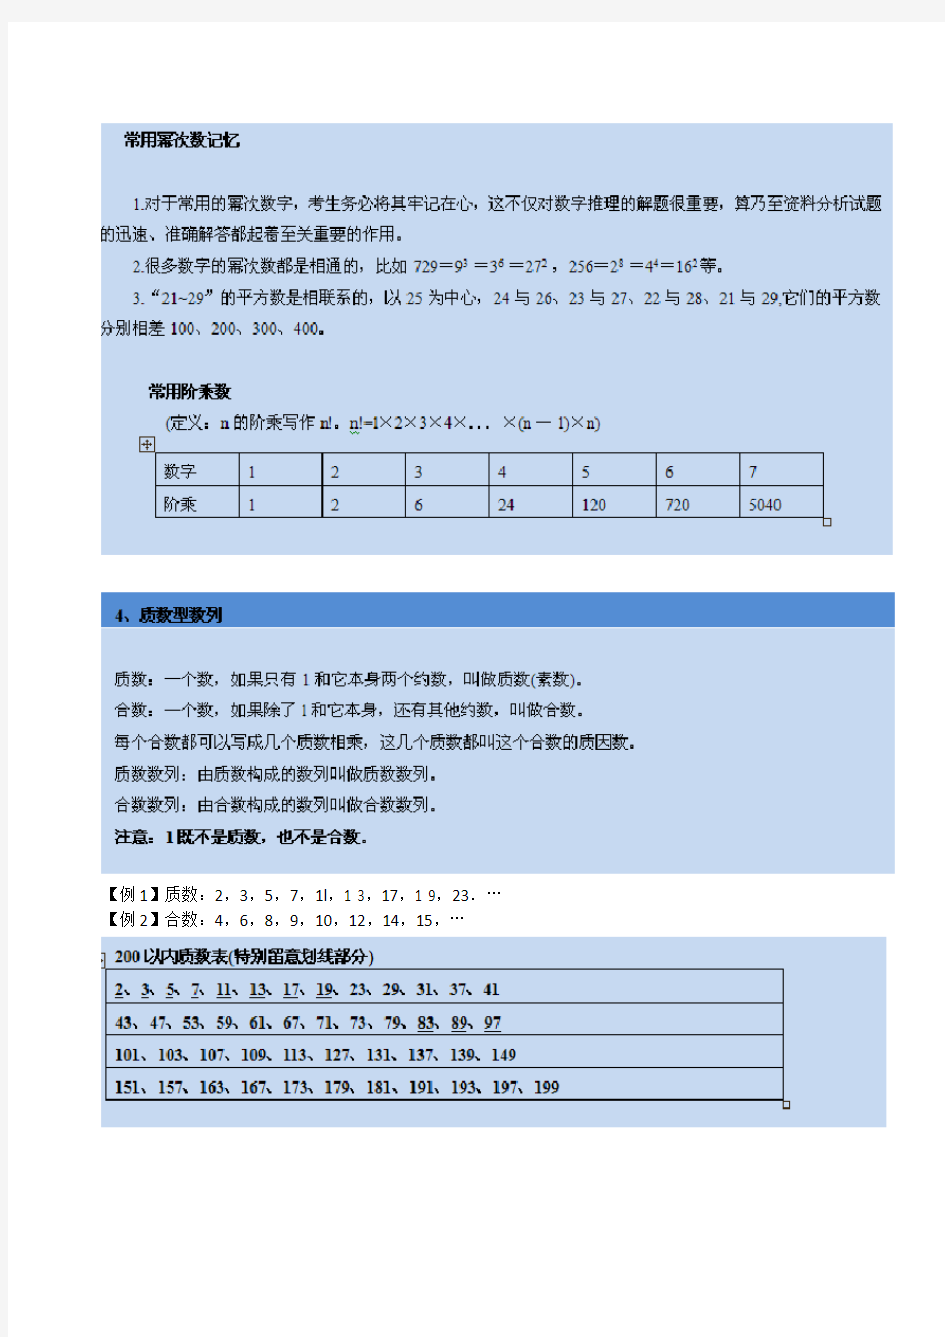 公务员考试数字推理基础知识各种特殊数字集(最全)